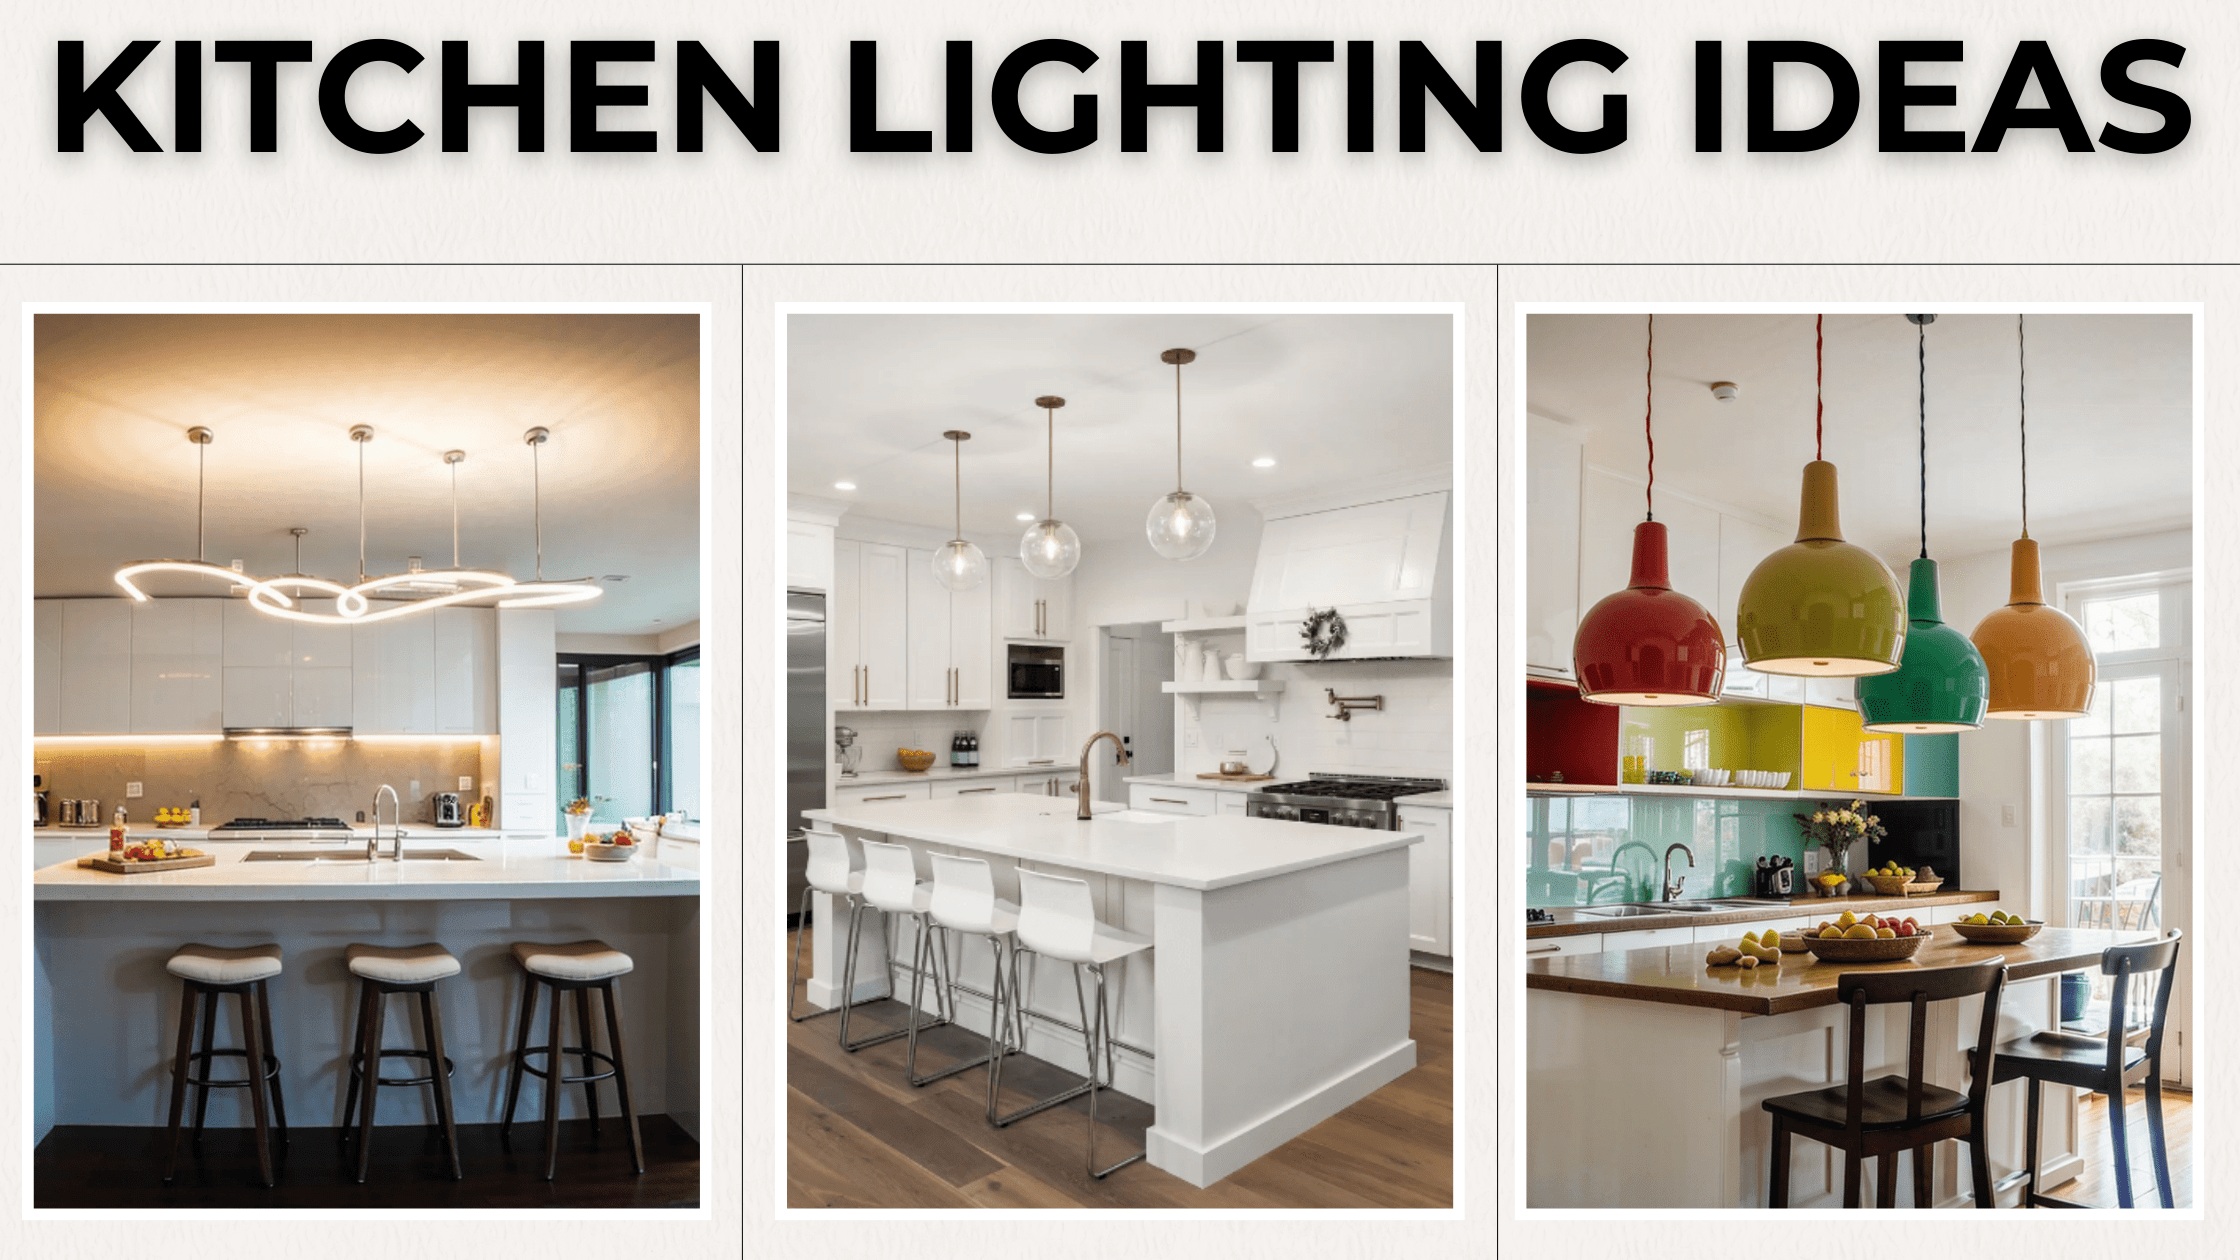 Kitchen lighting ideas